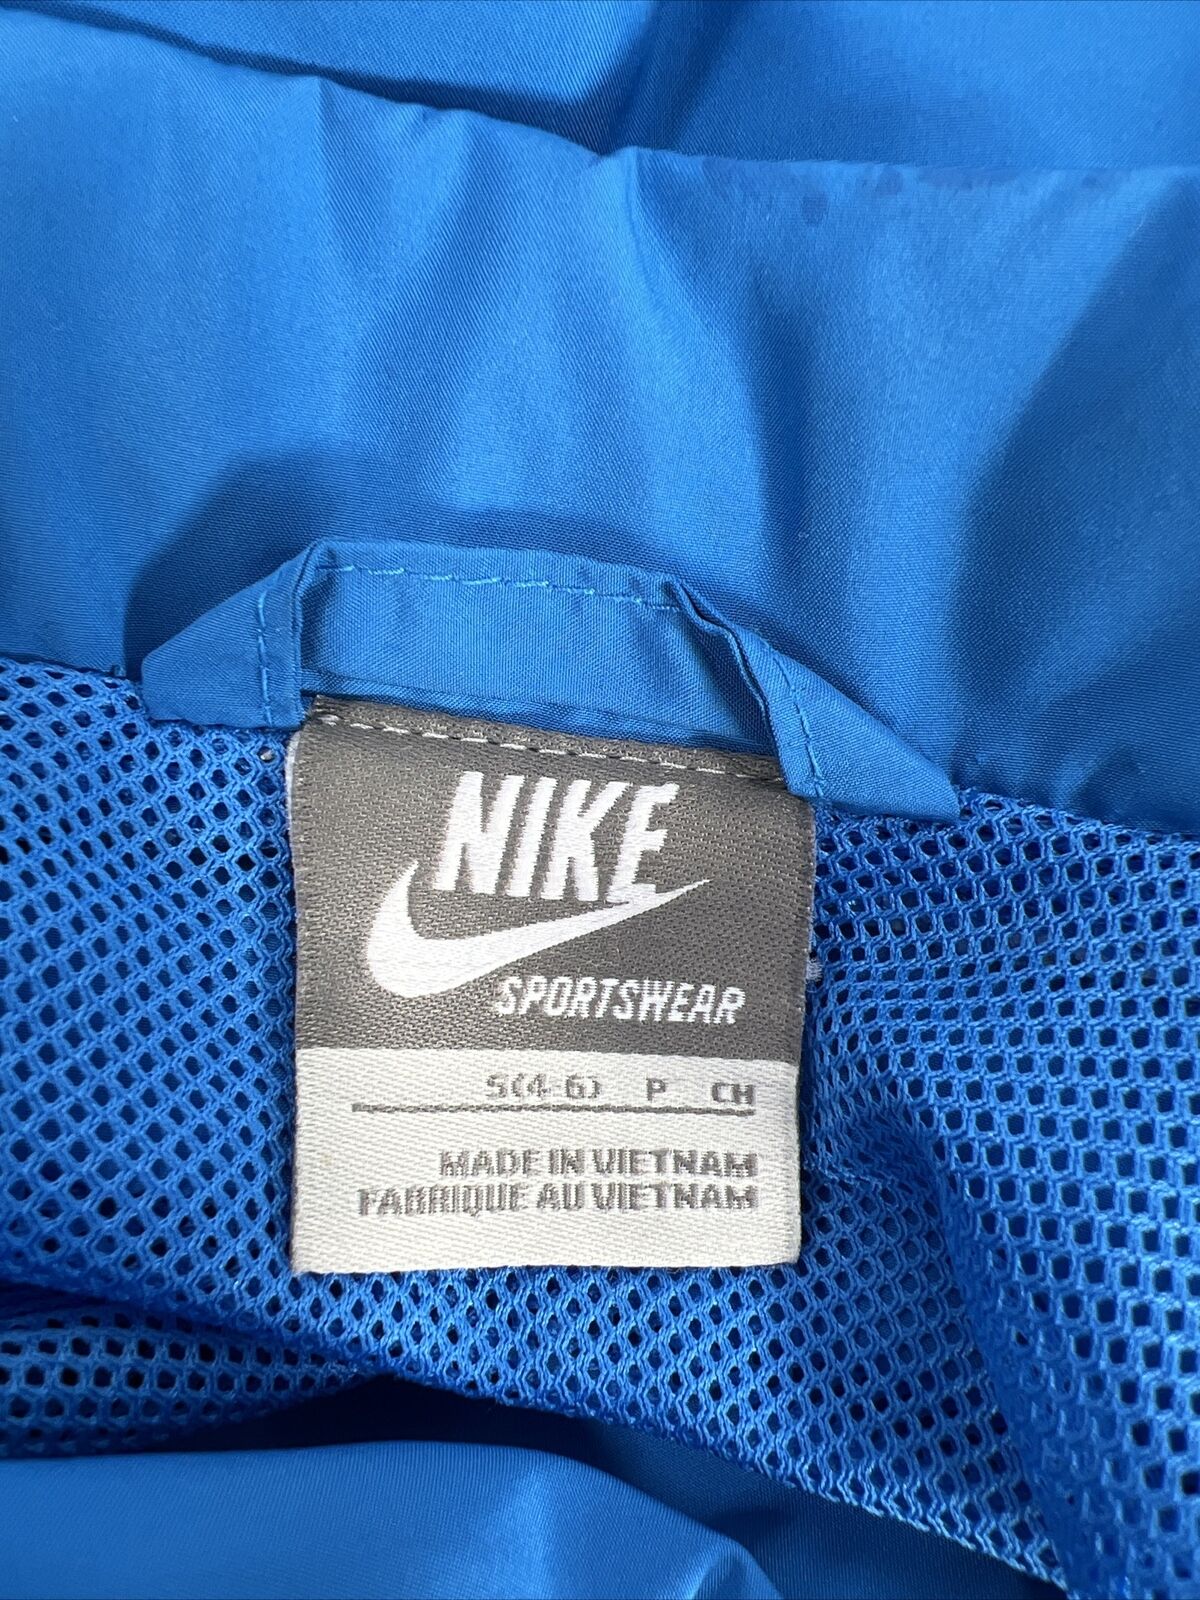 Nike Sportswear Chaqueta cortavientos azul con cremallera completa para mujer - S